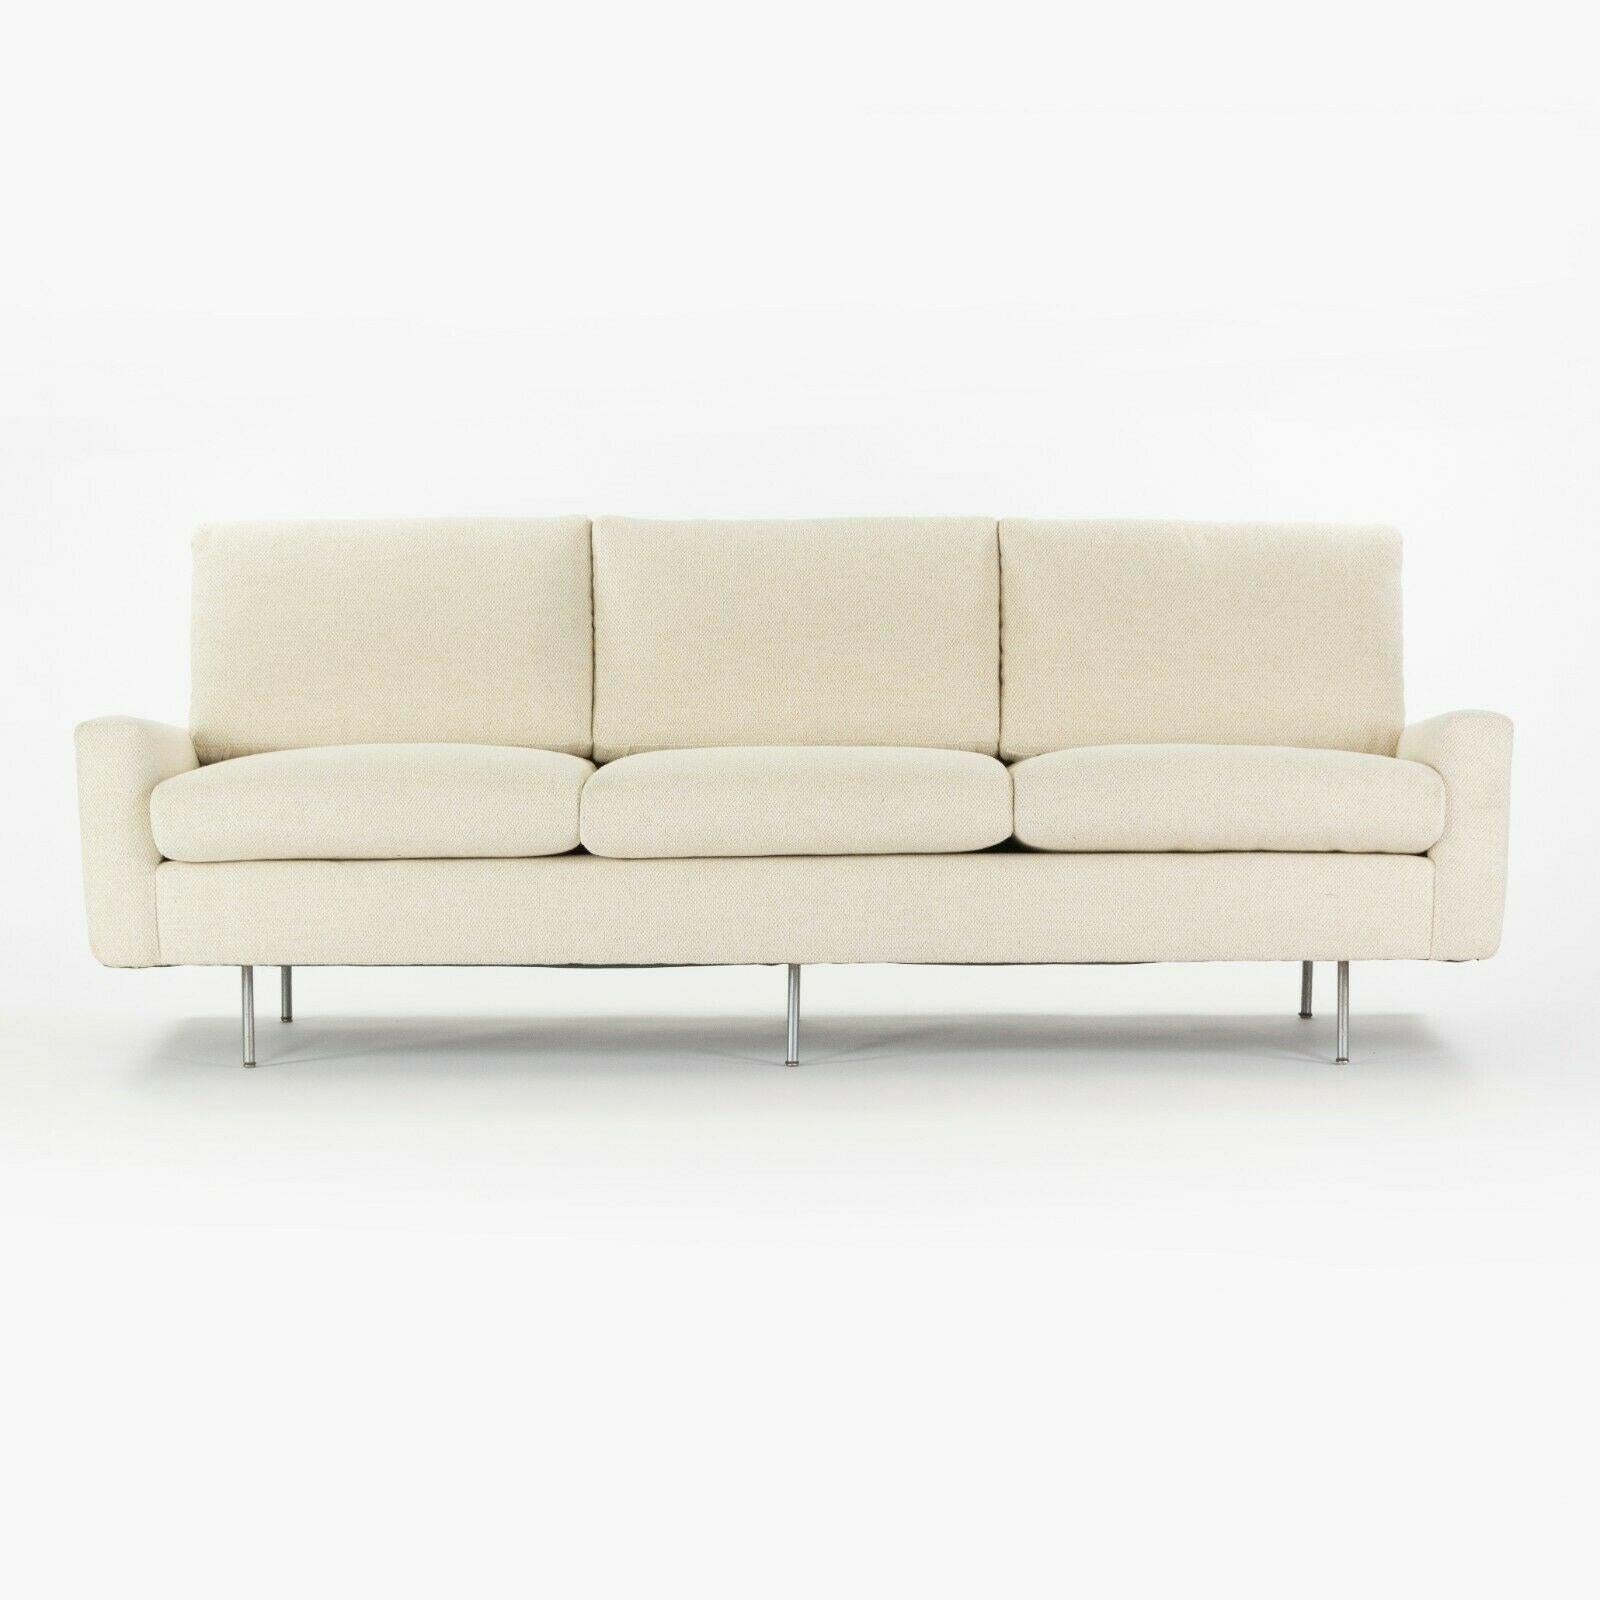 Zum Verkauf steht ein 1949 Florence Knoll für Knoll Associates 26 BC gepolstertes 3-Sitzer-Sofa, das gerade frisch von Forthright, einem renommierten Polstergeschäft mit Sitz in NYC und Connecticut, neu gepolstert wurde. Dieses Exemplar ist in